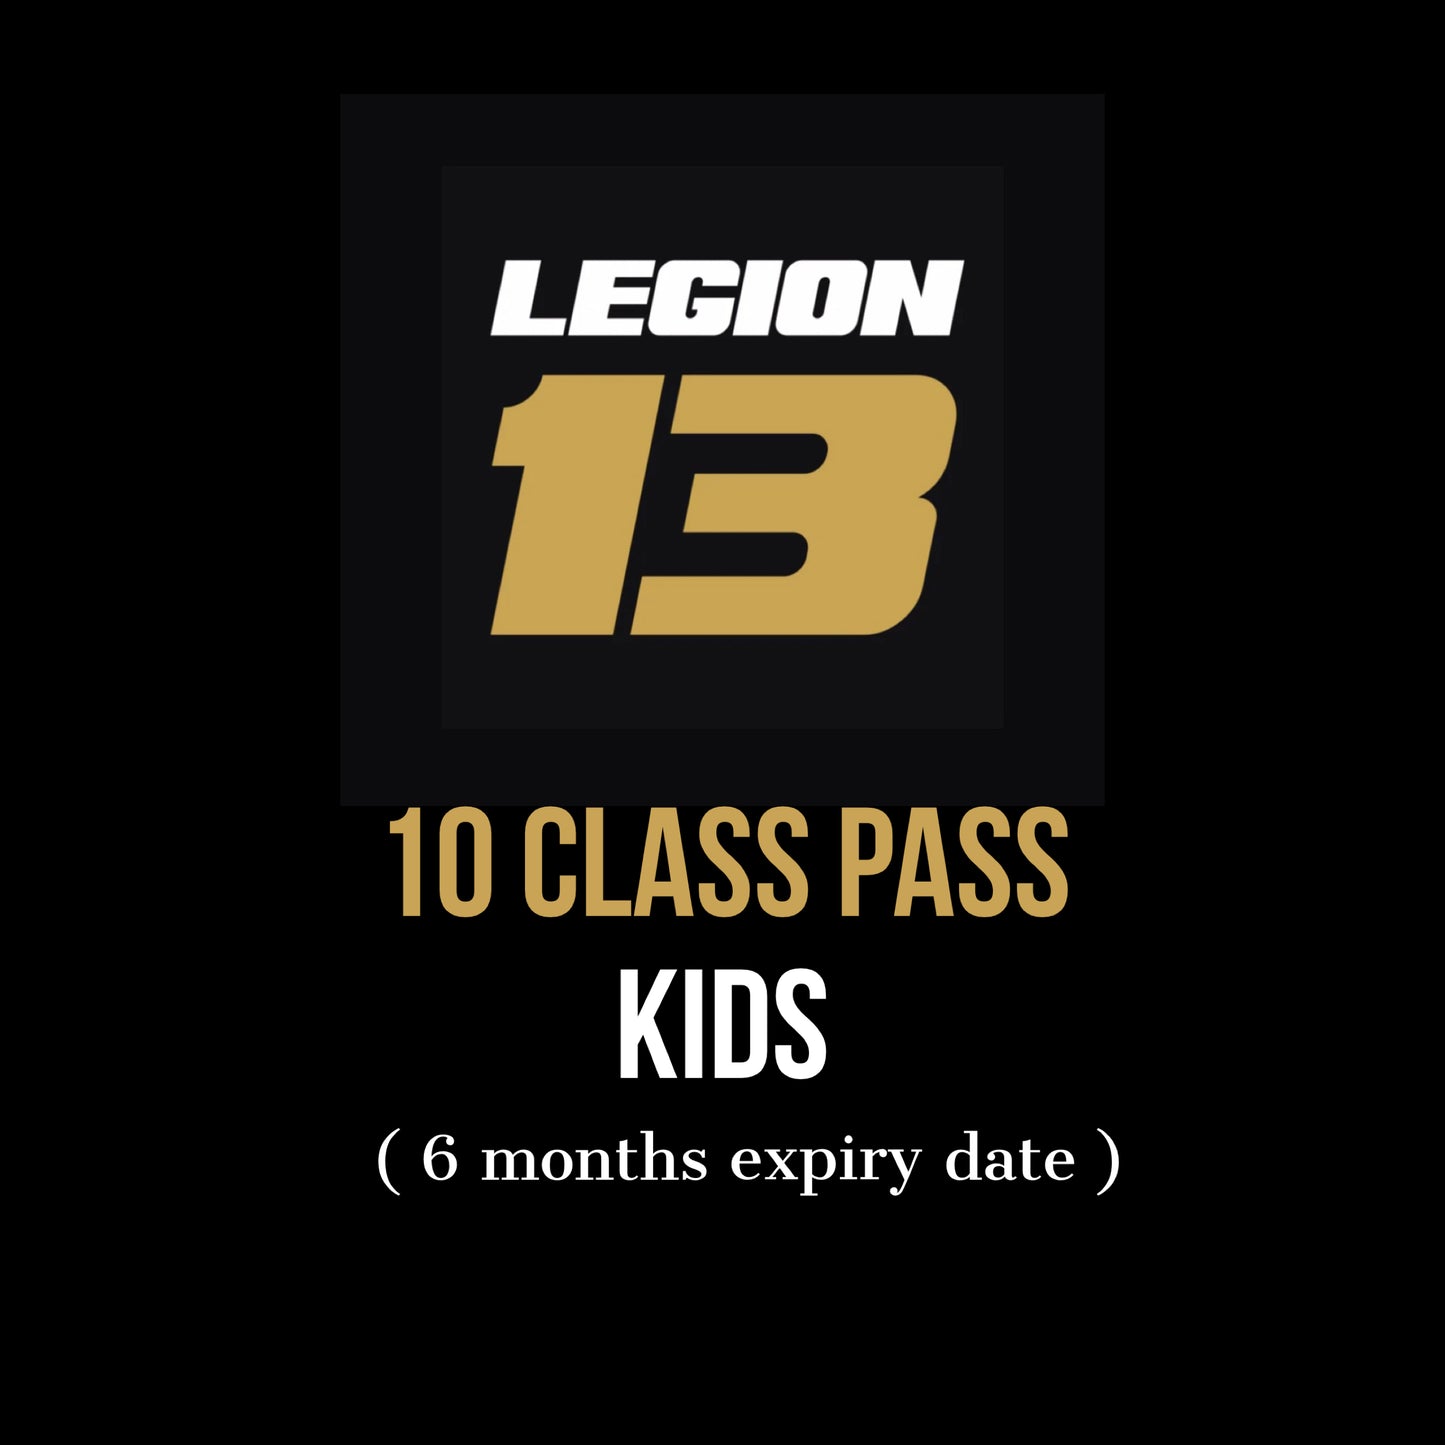 10 CLASS PASS KIDS